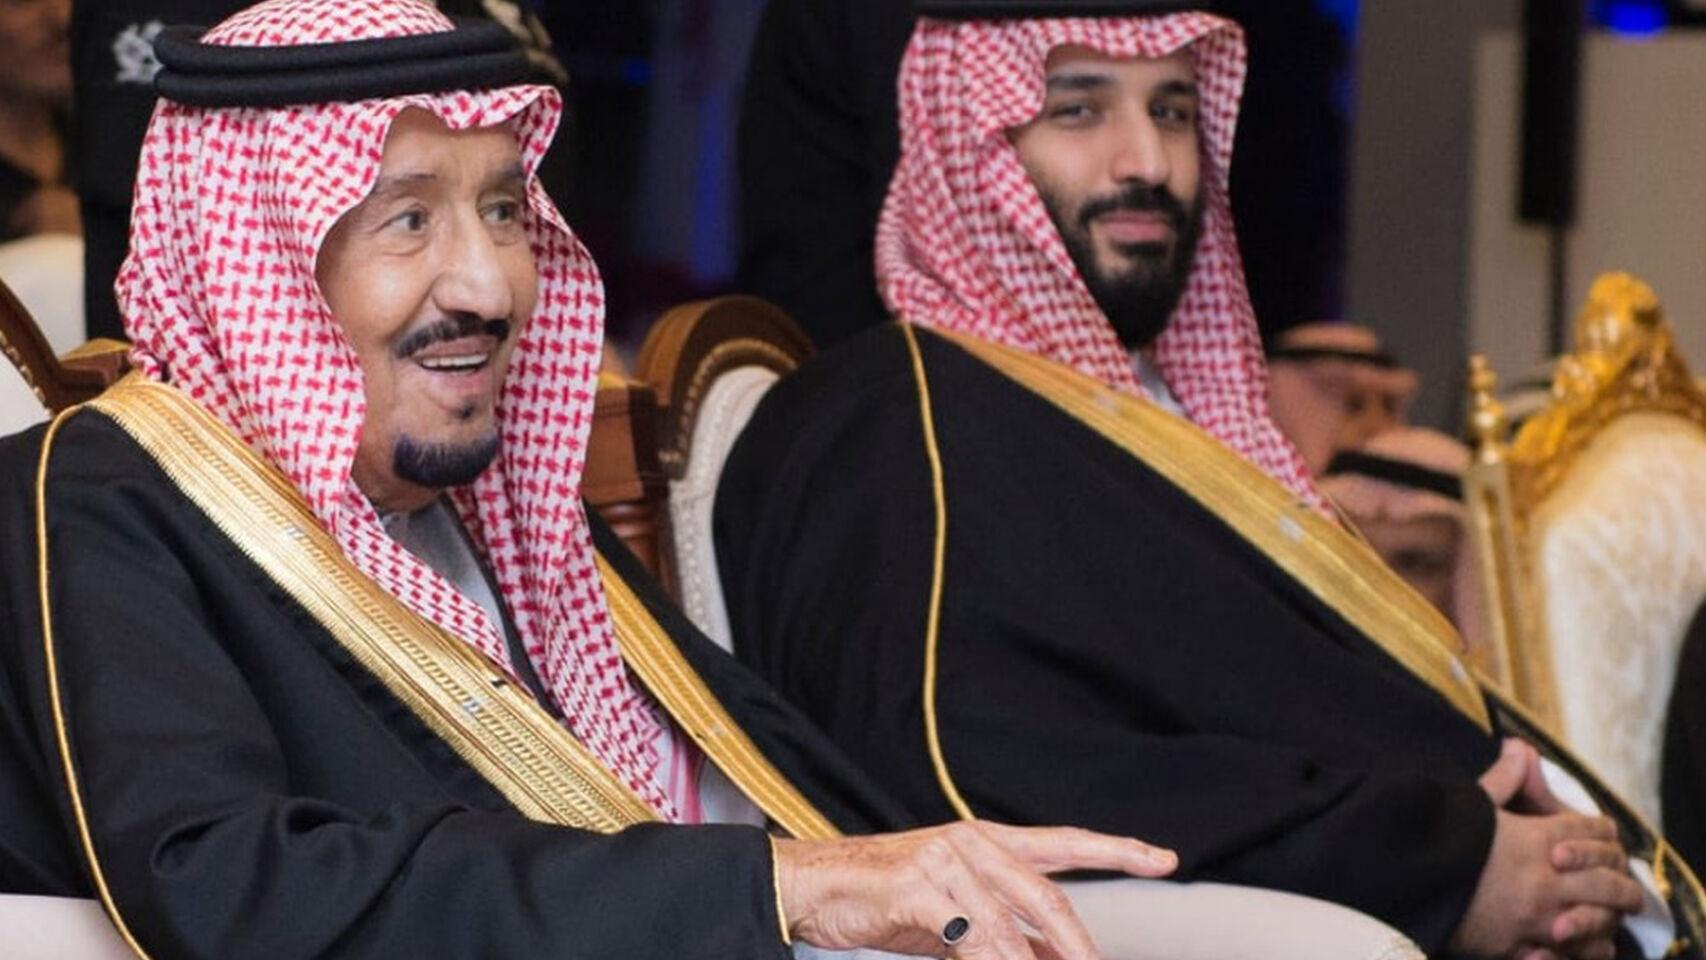 El rey saudí retira responsabilidades y autoridad al príncipe heredero bin Salmán